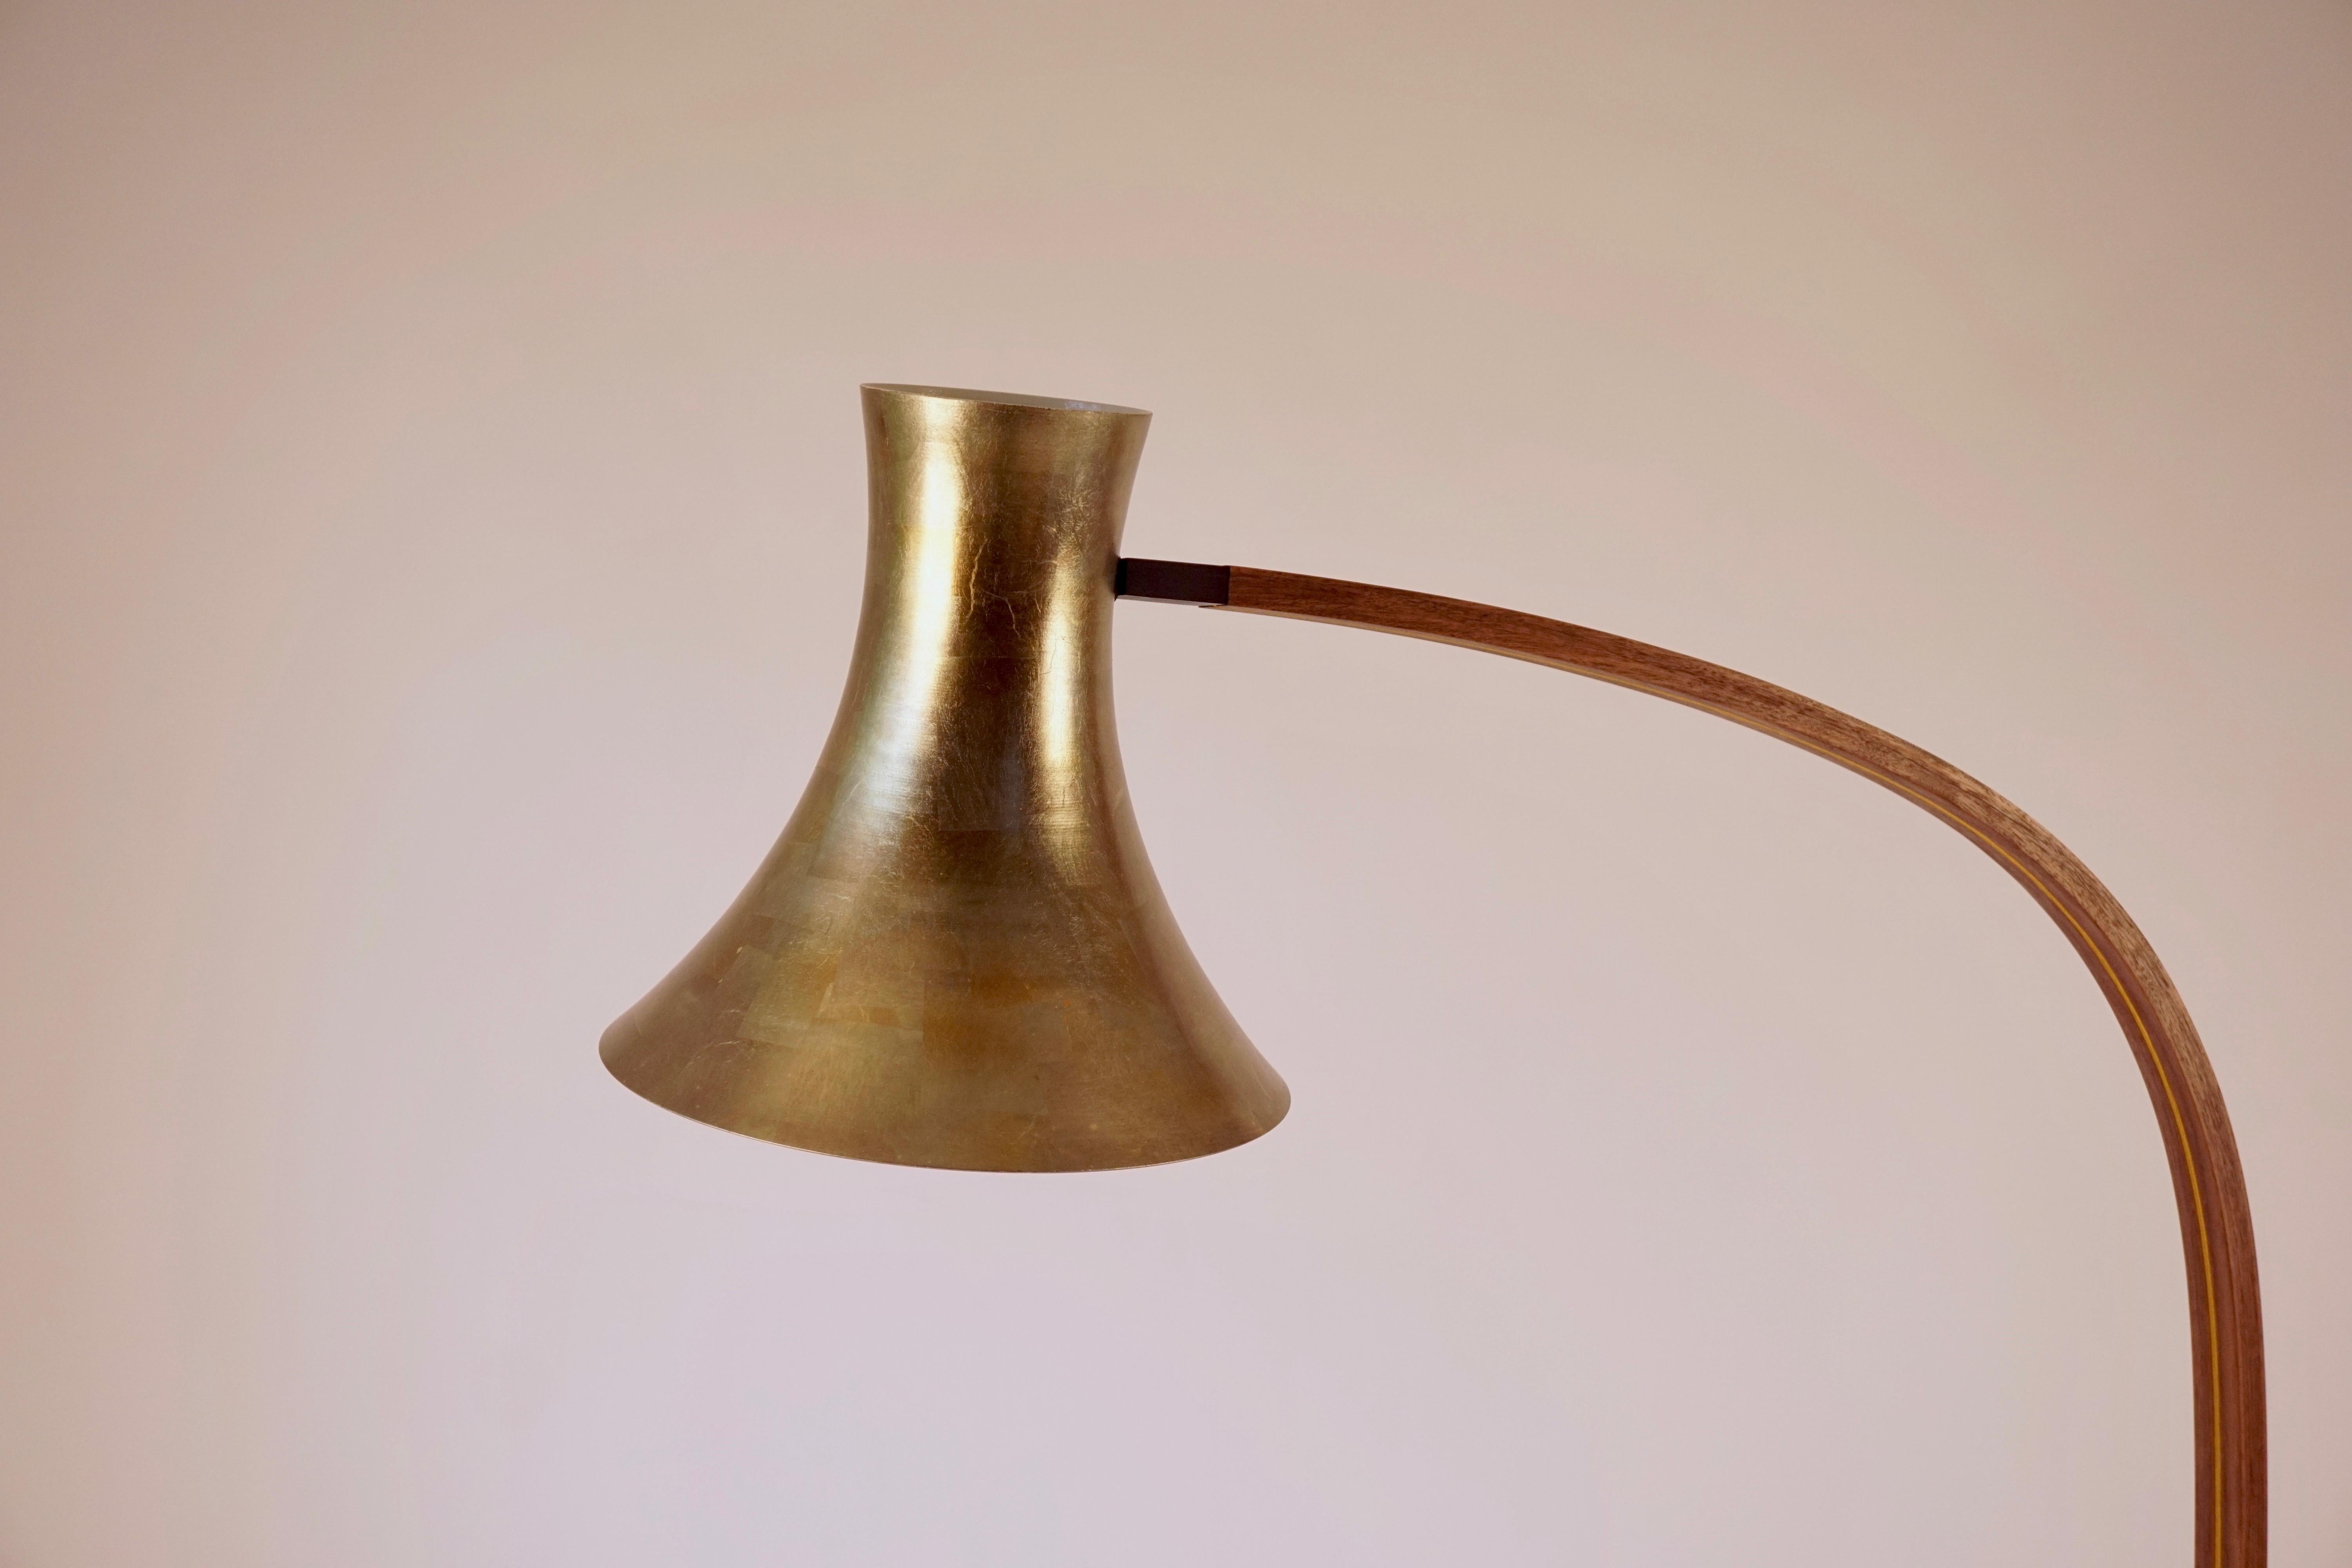 Le lampadaire spun est doté d'un abat-jour en forme de trompette en aluminium filé à la main, dont l'intérieur a été recouvert d'une peinture en poudre blanc os. L'extérieur de l'abat-jour a été doré avec une feuille de couleur bronze. La base de la